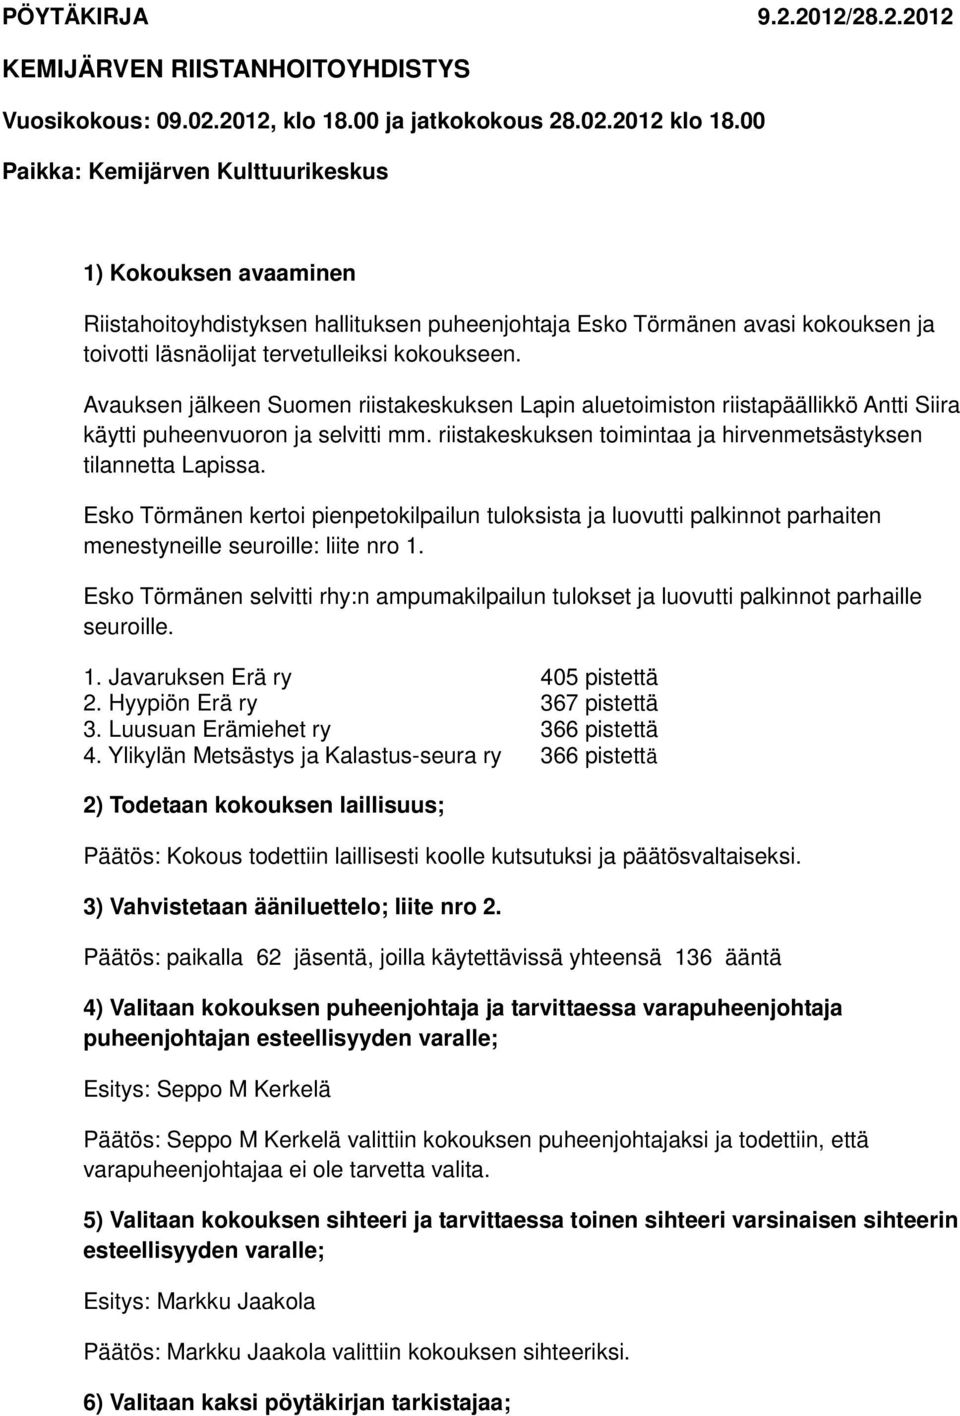 Avauksen jälkeen Suomen riistakeskuksen Lapin aluetoimiston riistapäällikkö Antti Siira käytti puheenvuoron ja selvitti mm. riistakeskuksen toimintaa ja hirvenmetsästyksen tilannetta Lapissa.